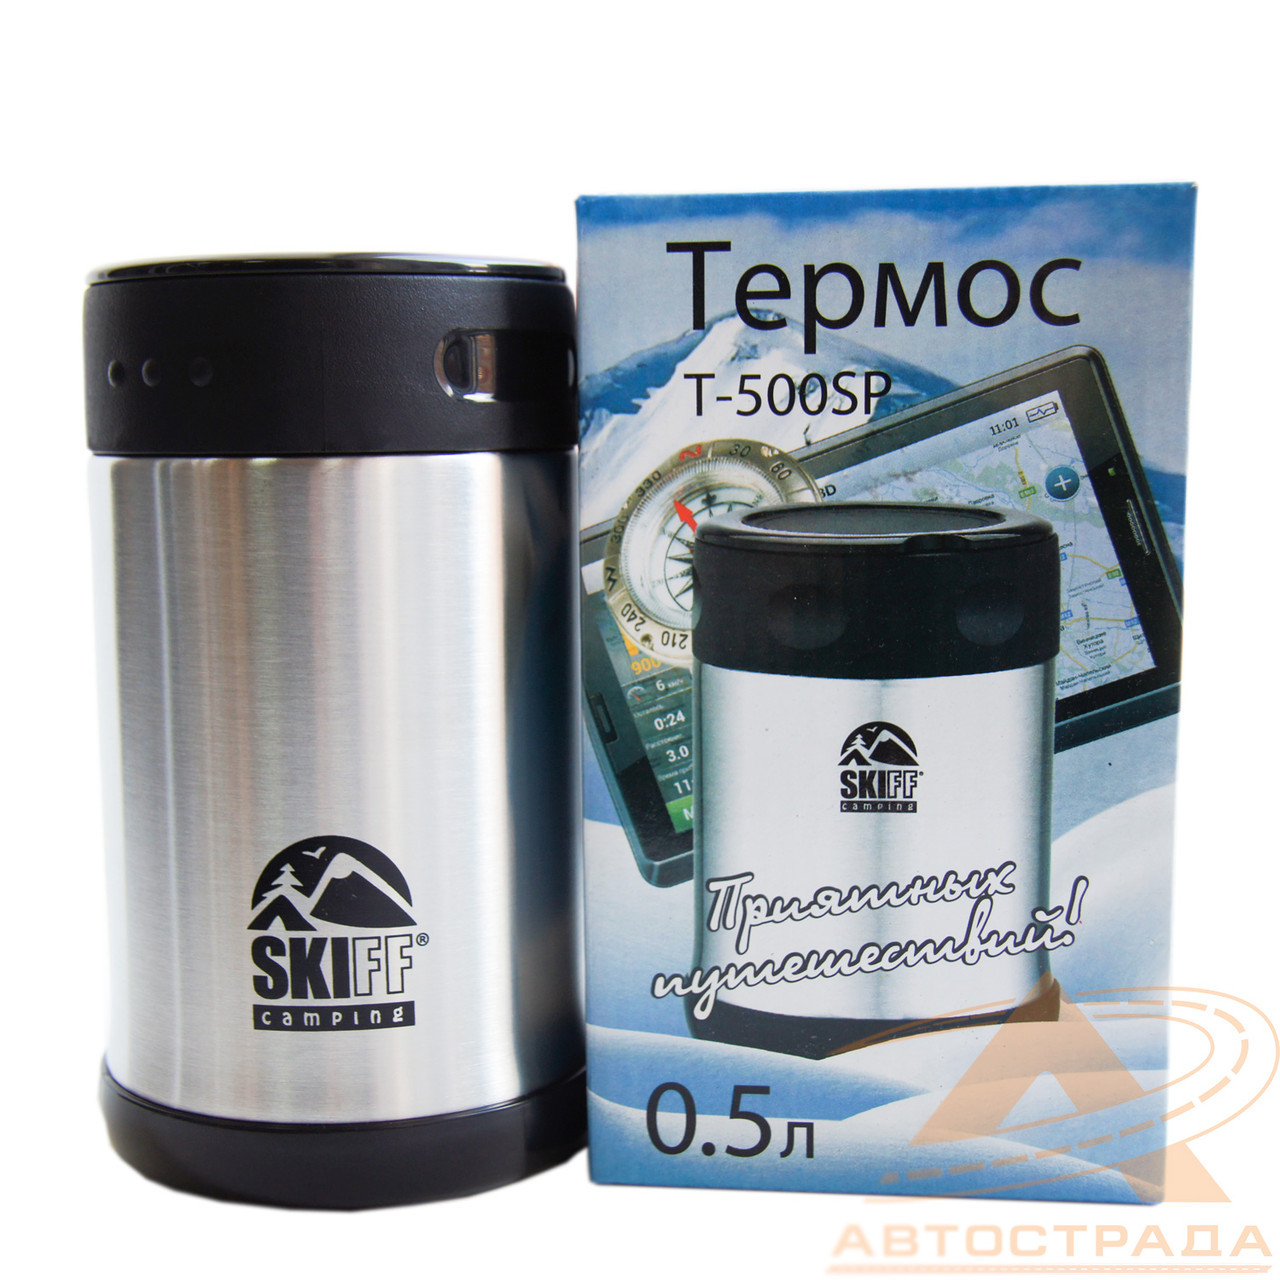 Термос SKIFF 0.5л Т500SP широкое горло (суповой)